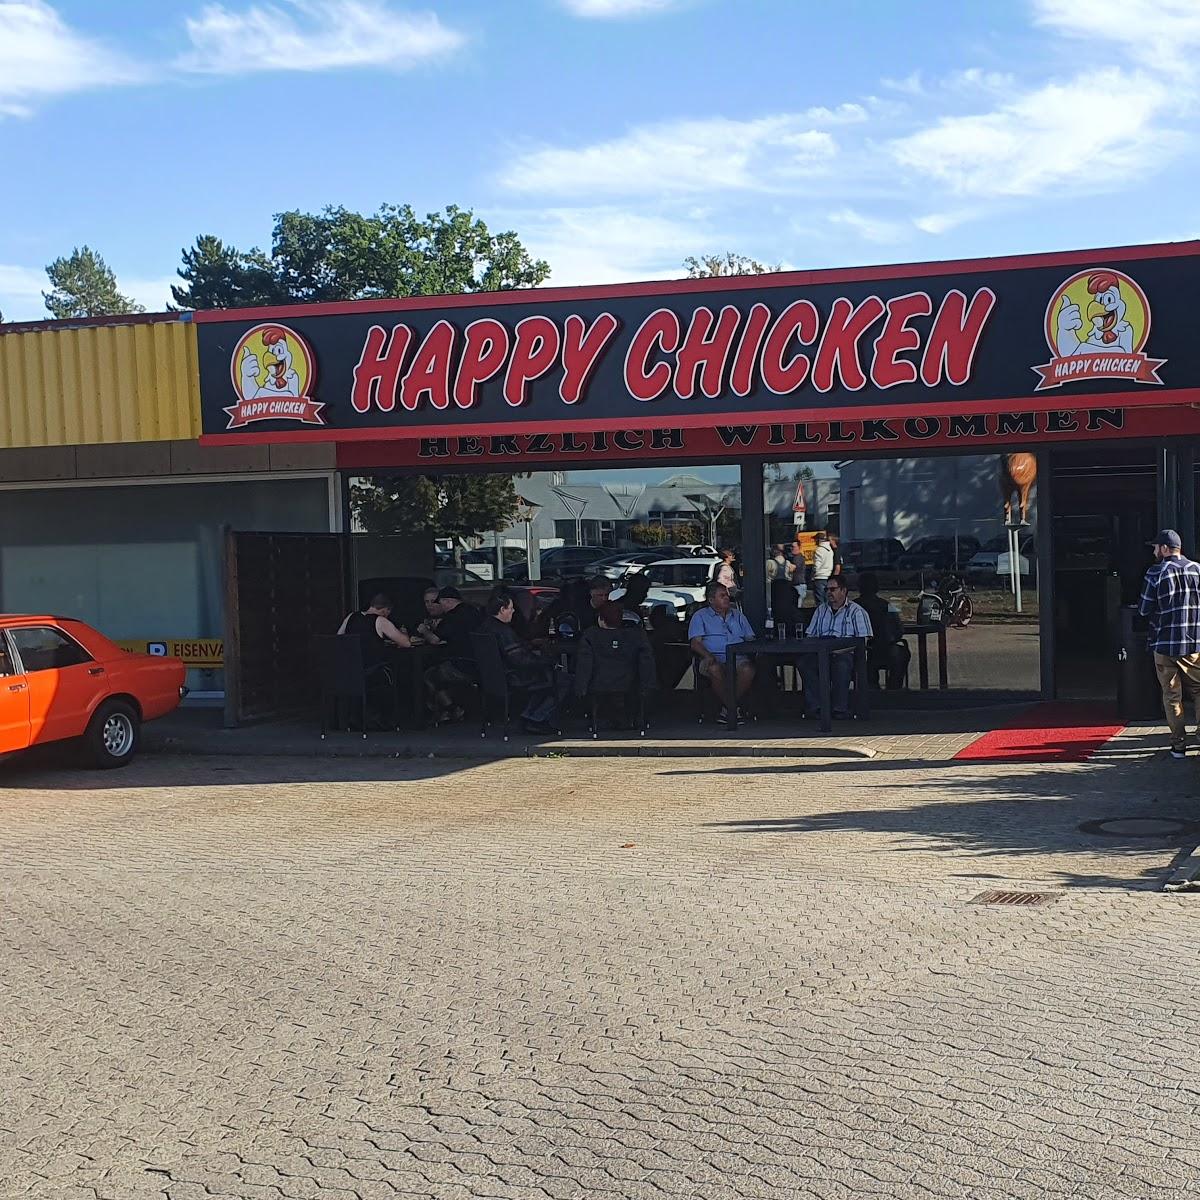 Restaurant "Happy Chicken" in  Gifhorn